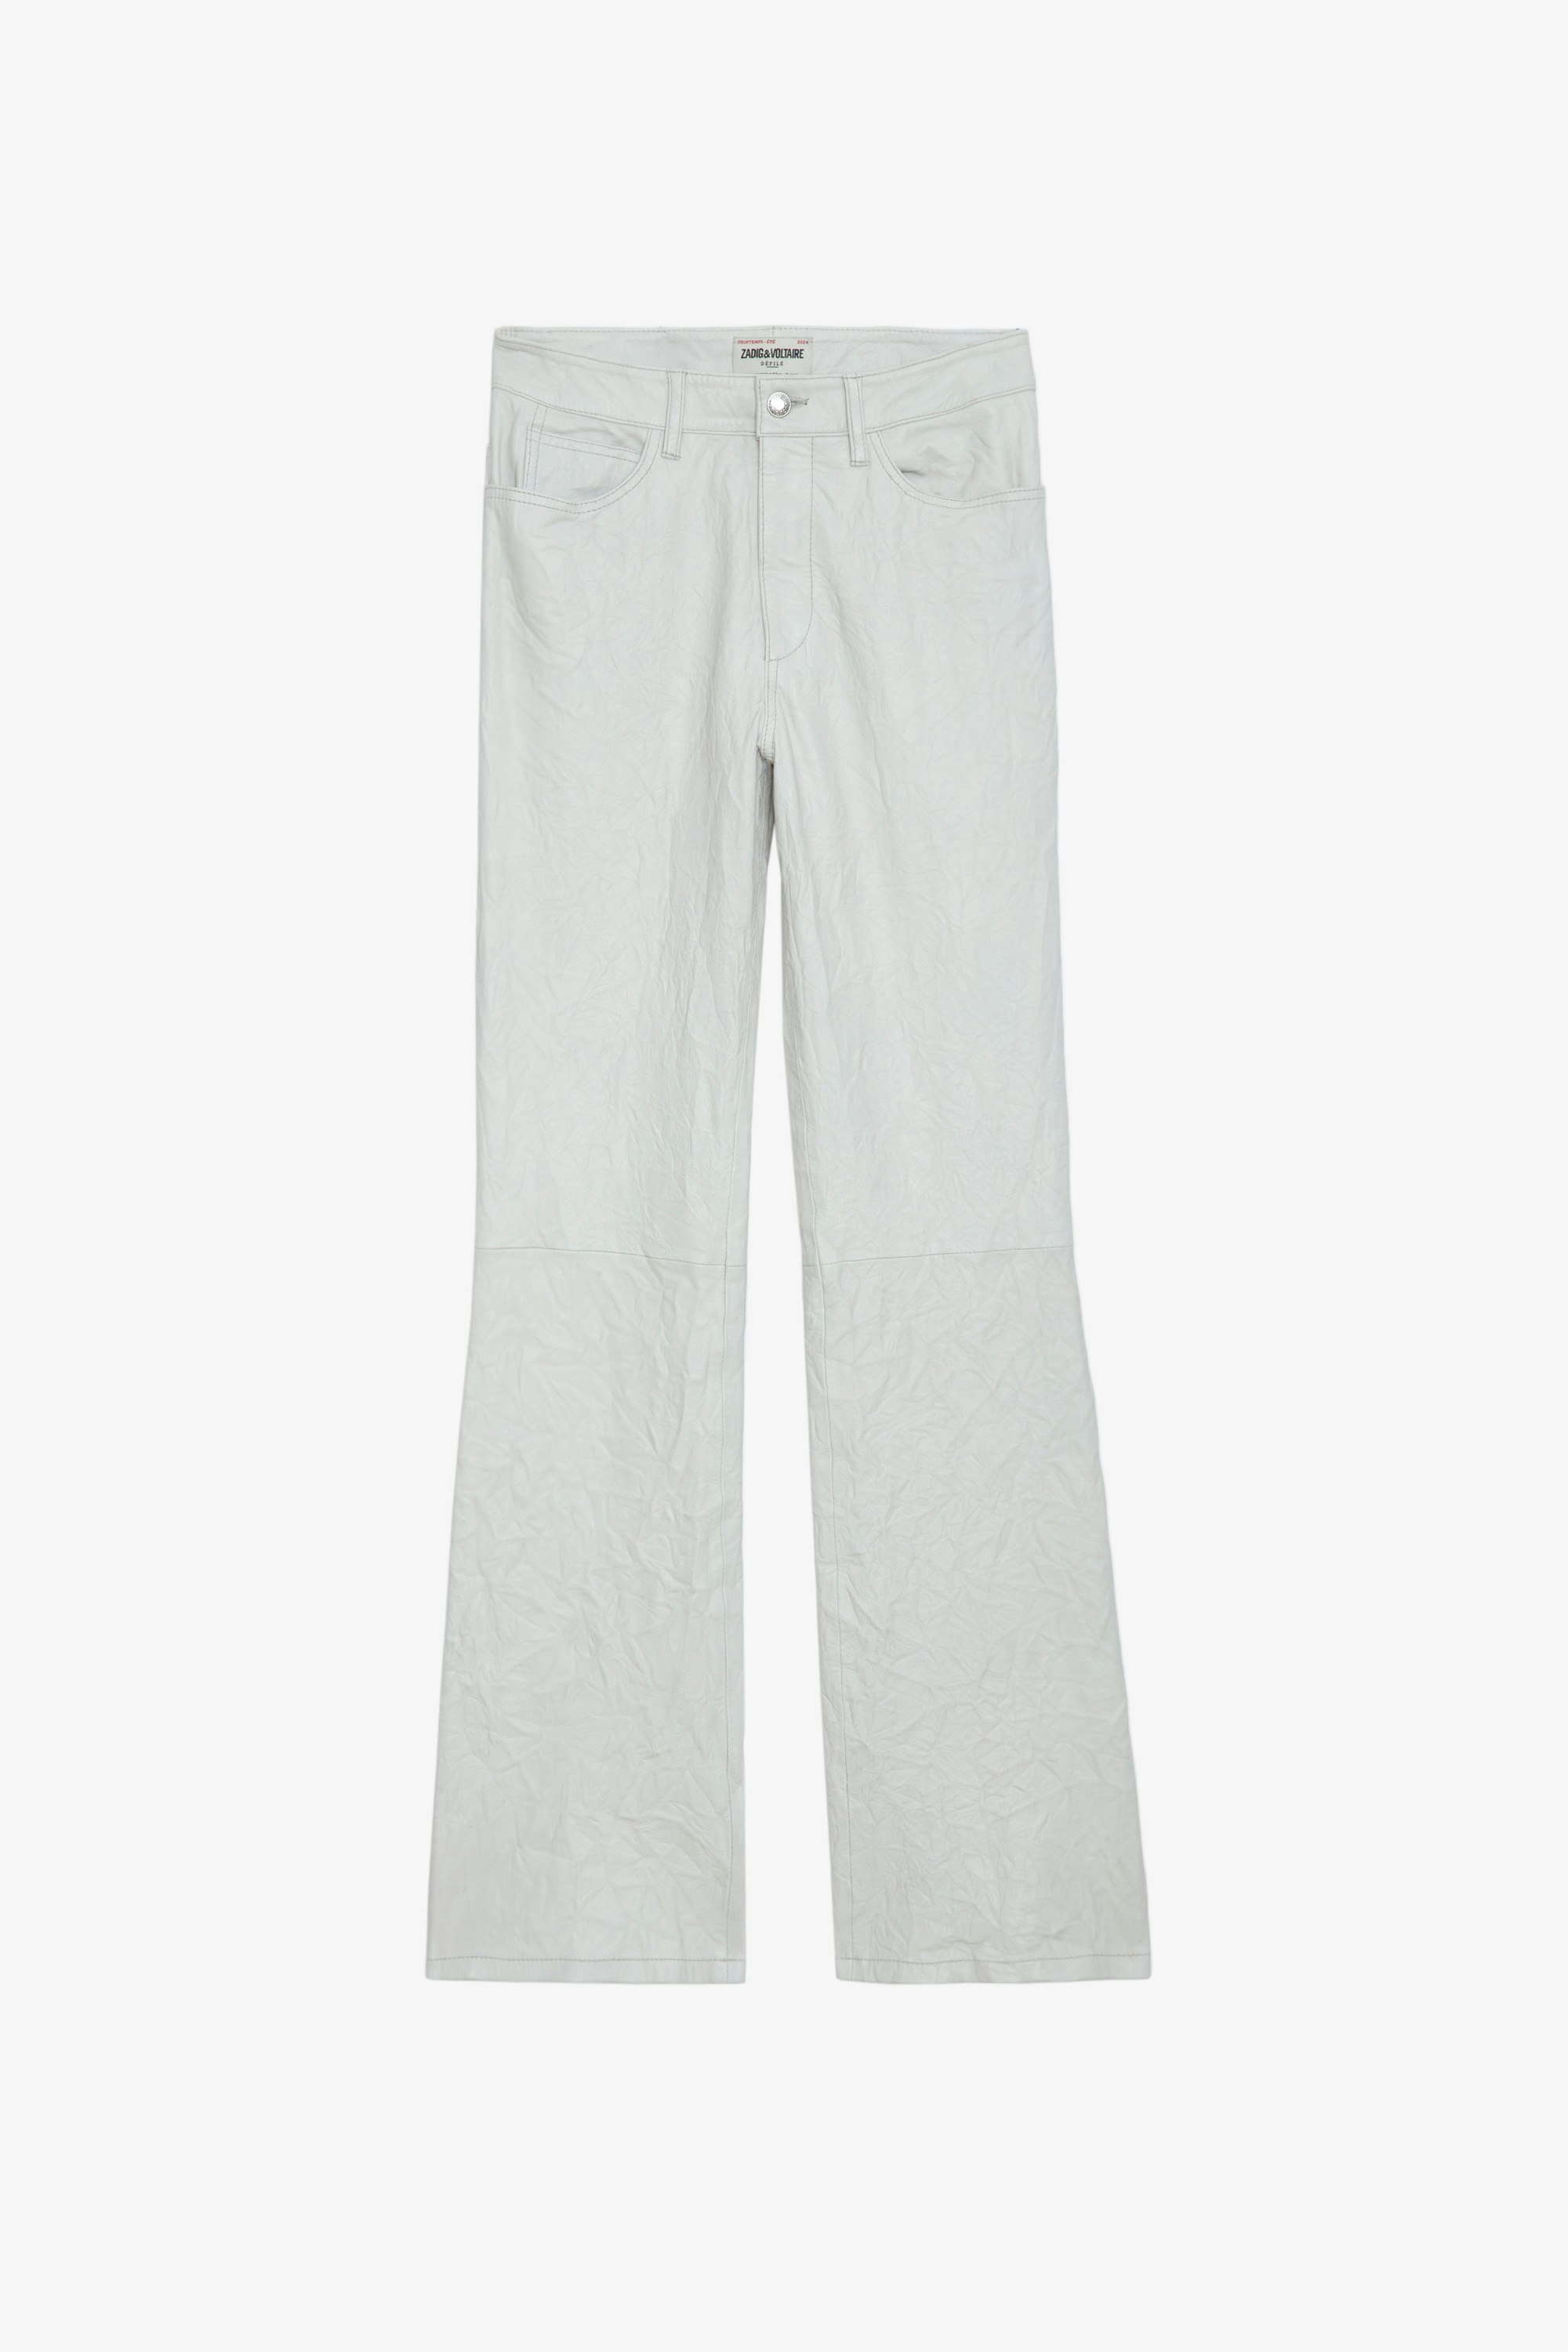 Pantalon Pistol Cuir Froissé - Pantalon de tailleur évasé en cuir froissé blanc à poches.